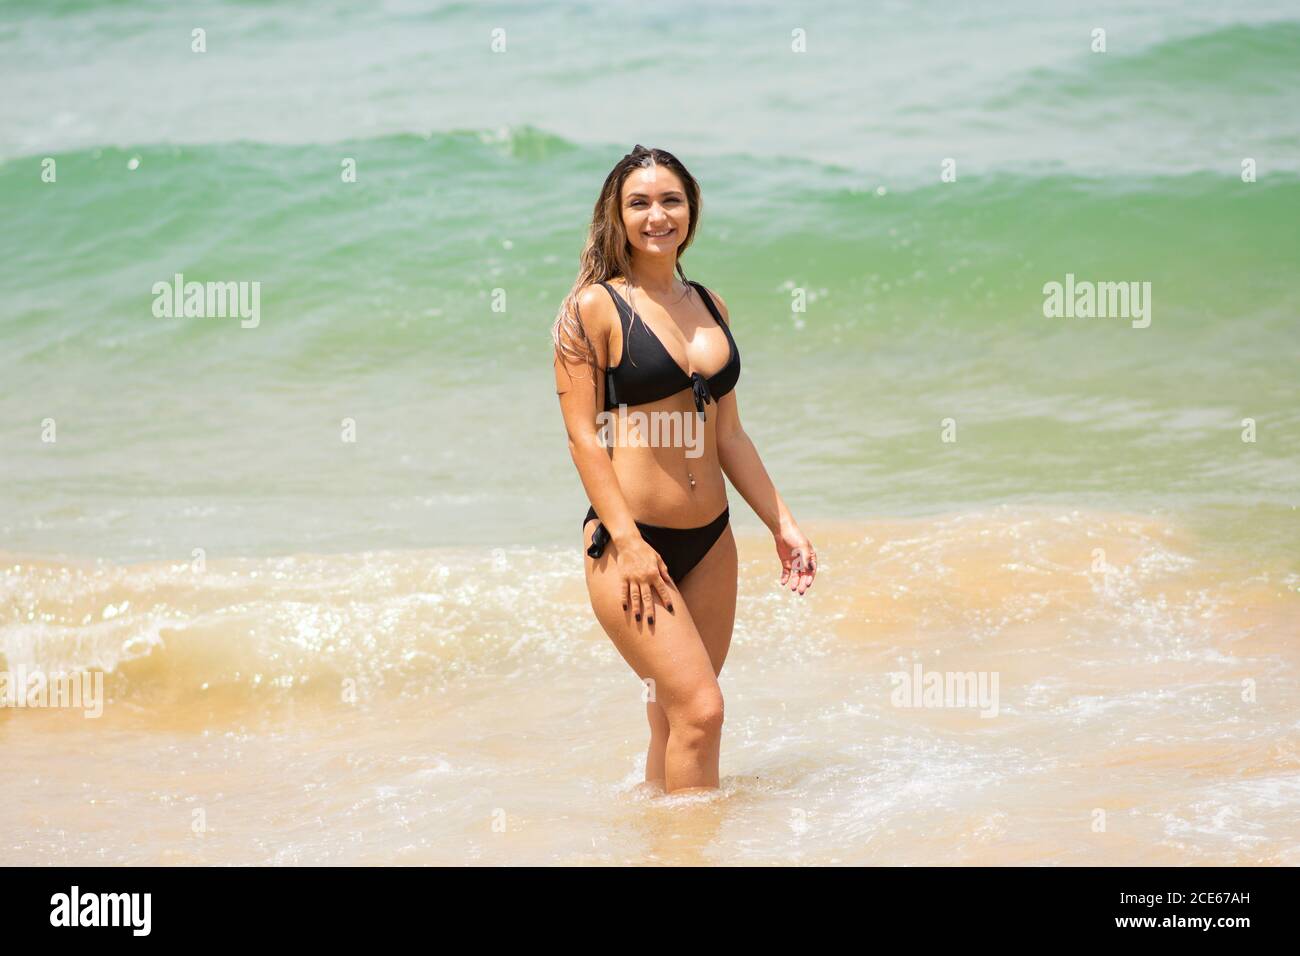 Beautiful woman in bikini smiling Stock Photo